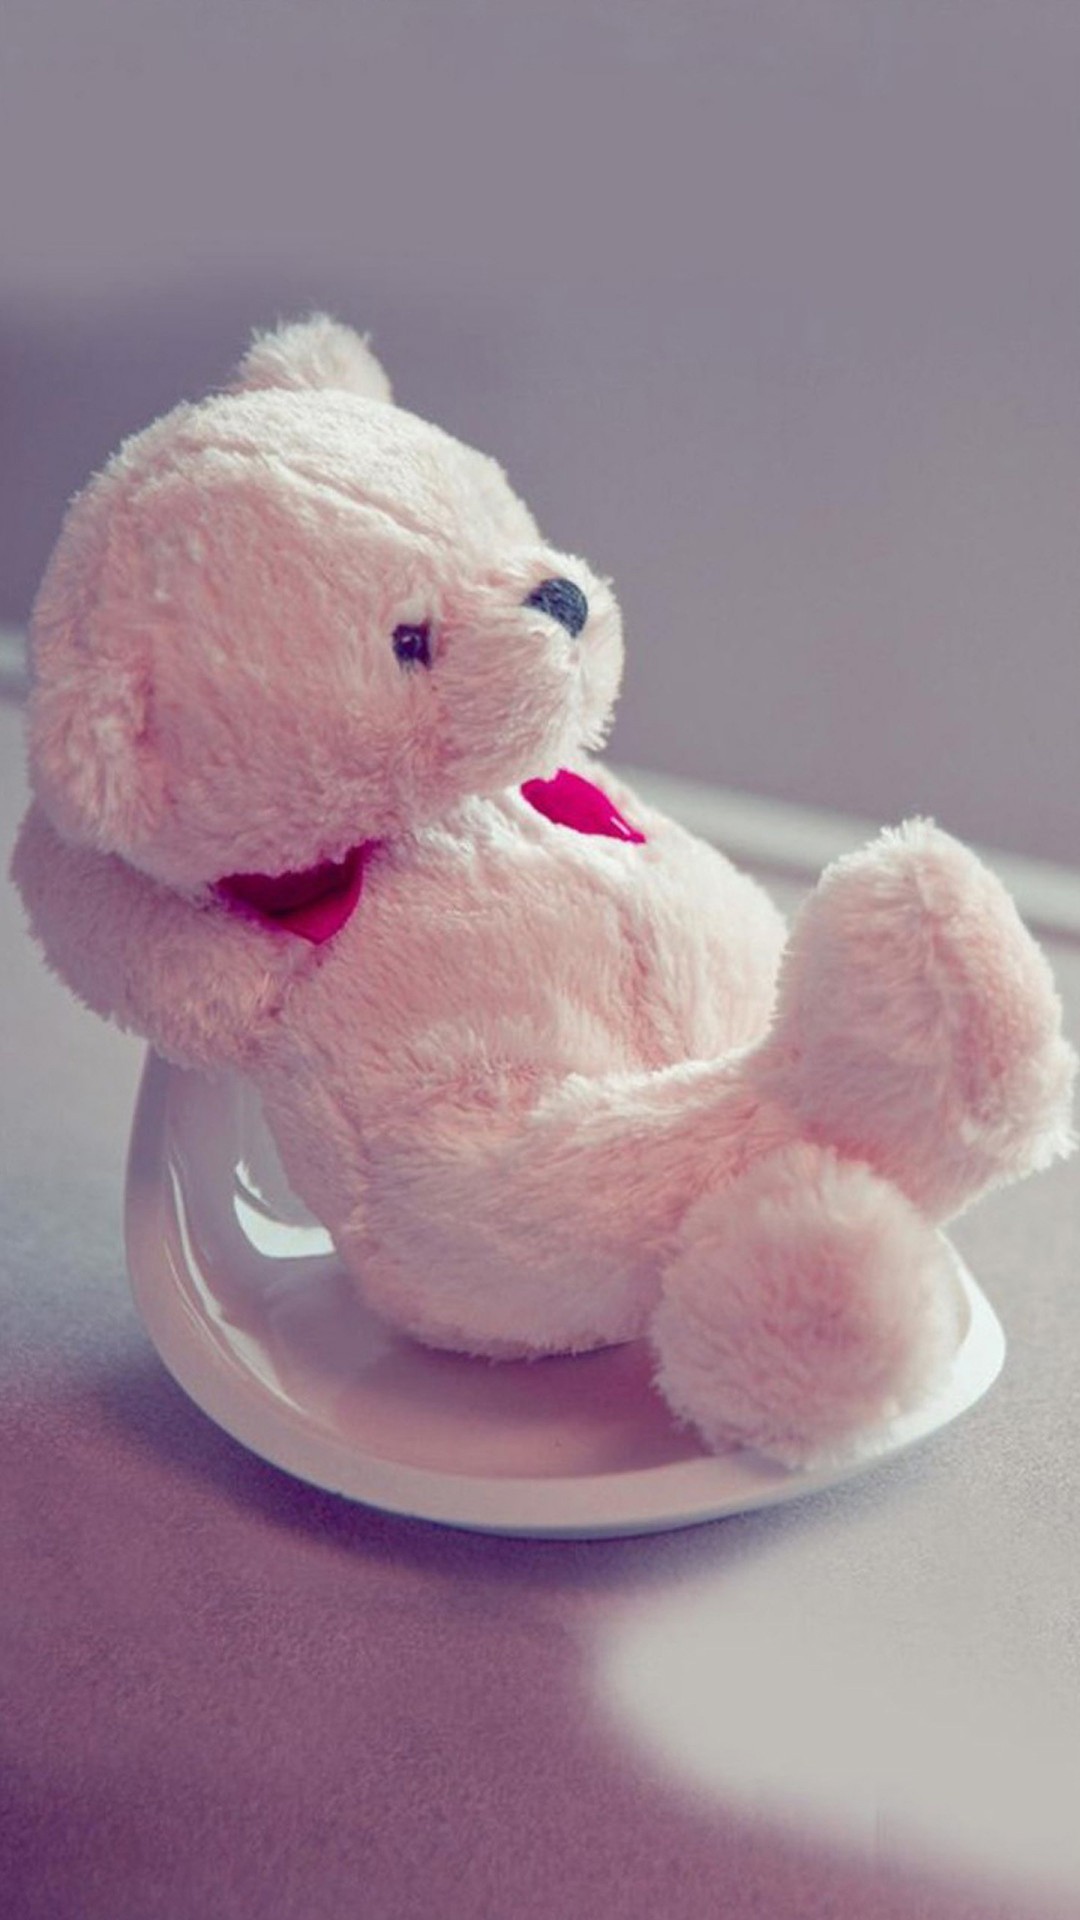 1080x1920 A cute teddy bear